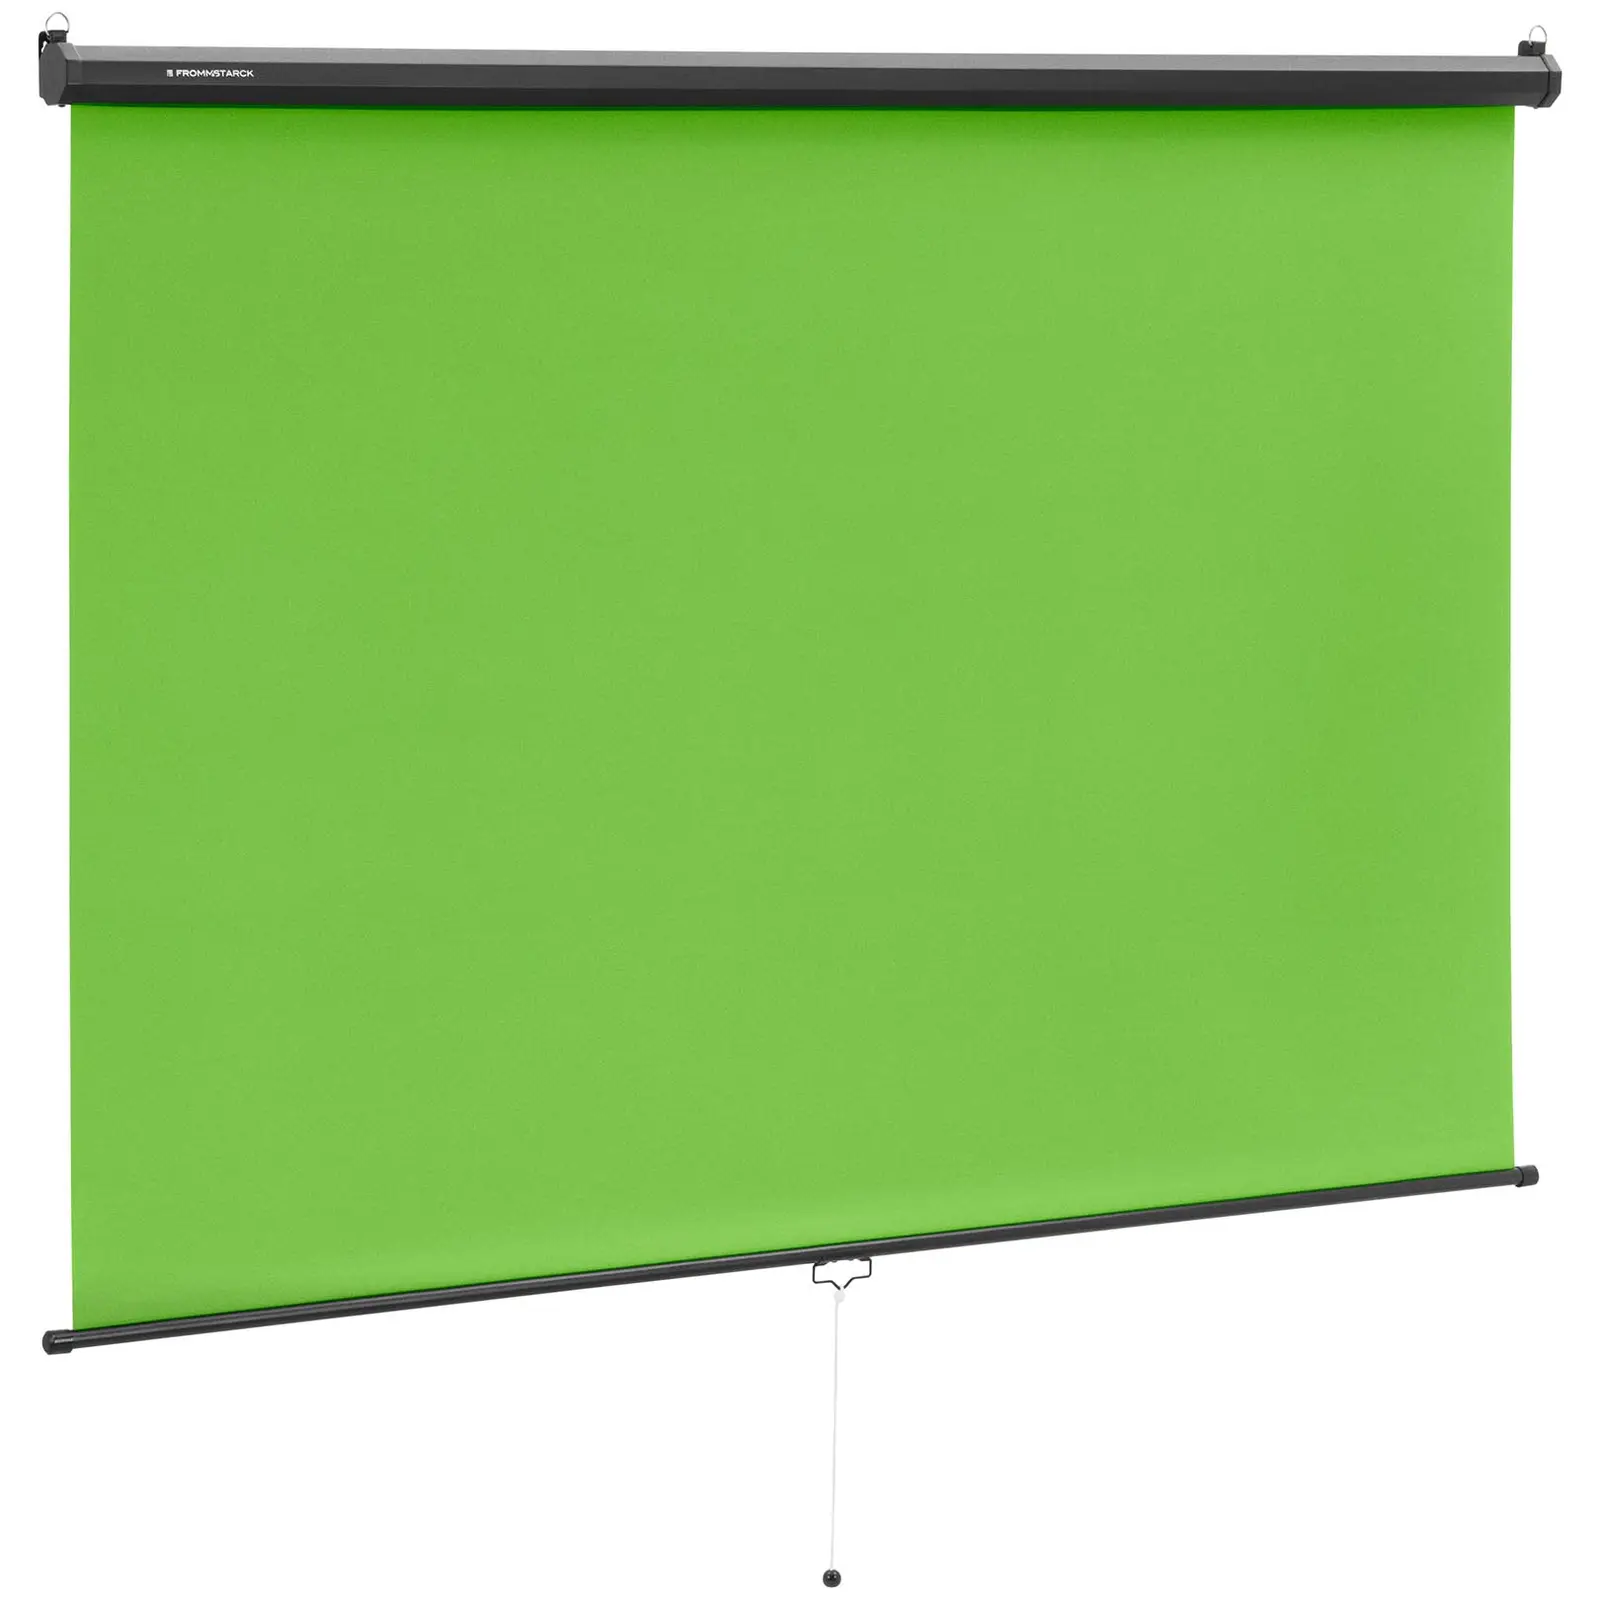 Πράσινη οθόνη - ρολό - για τοίχο και οροφή - 84" - 2060 x 1813 χλστ.